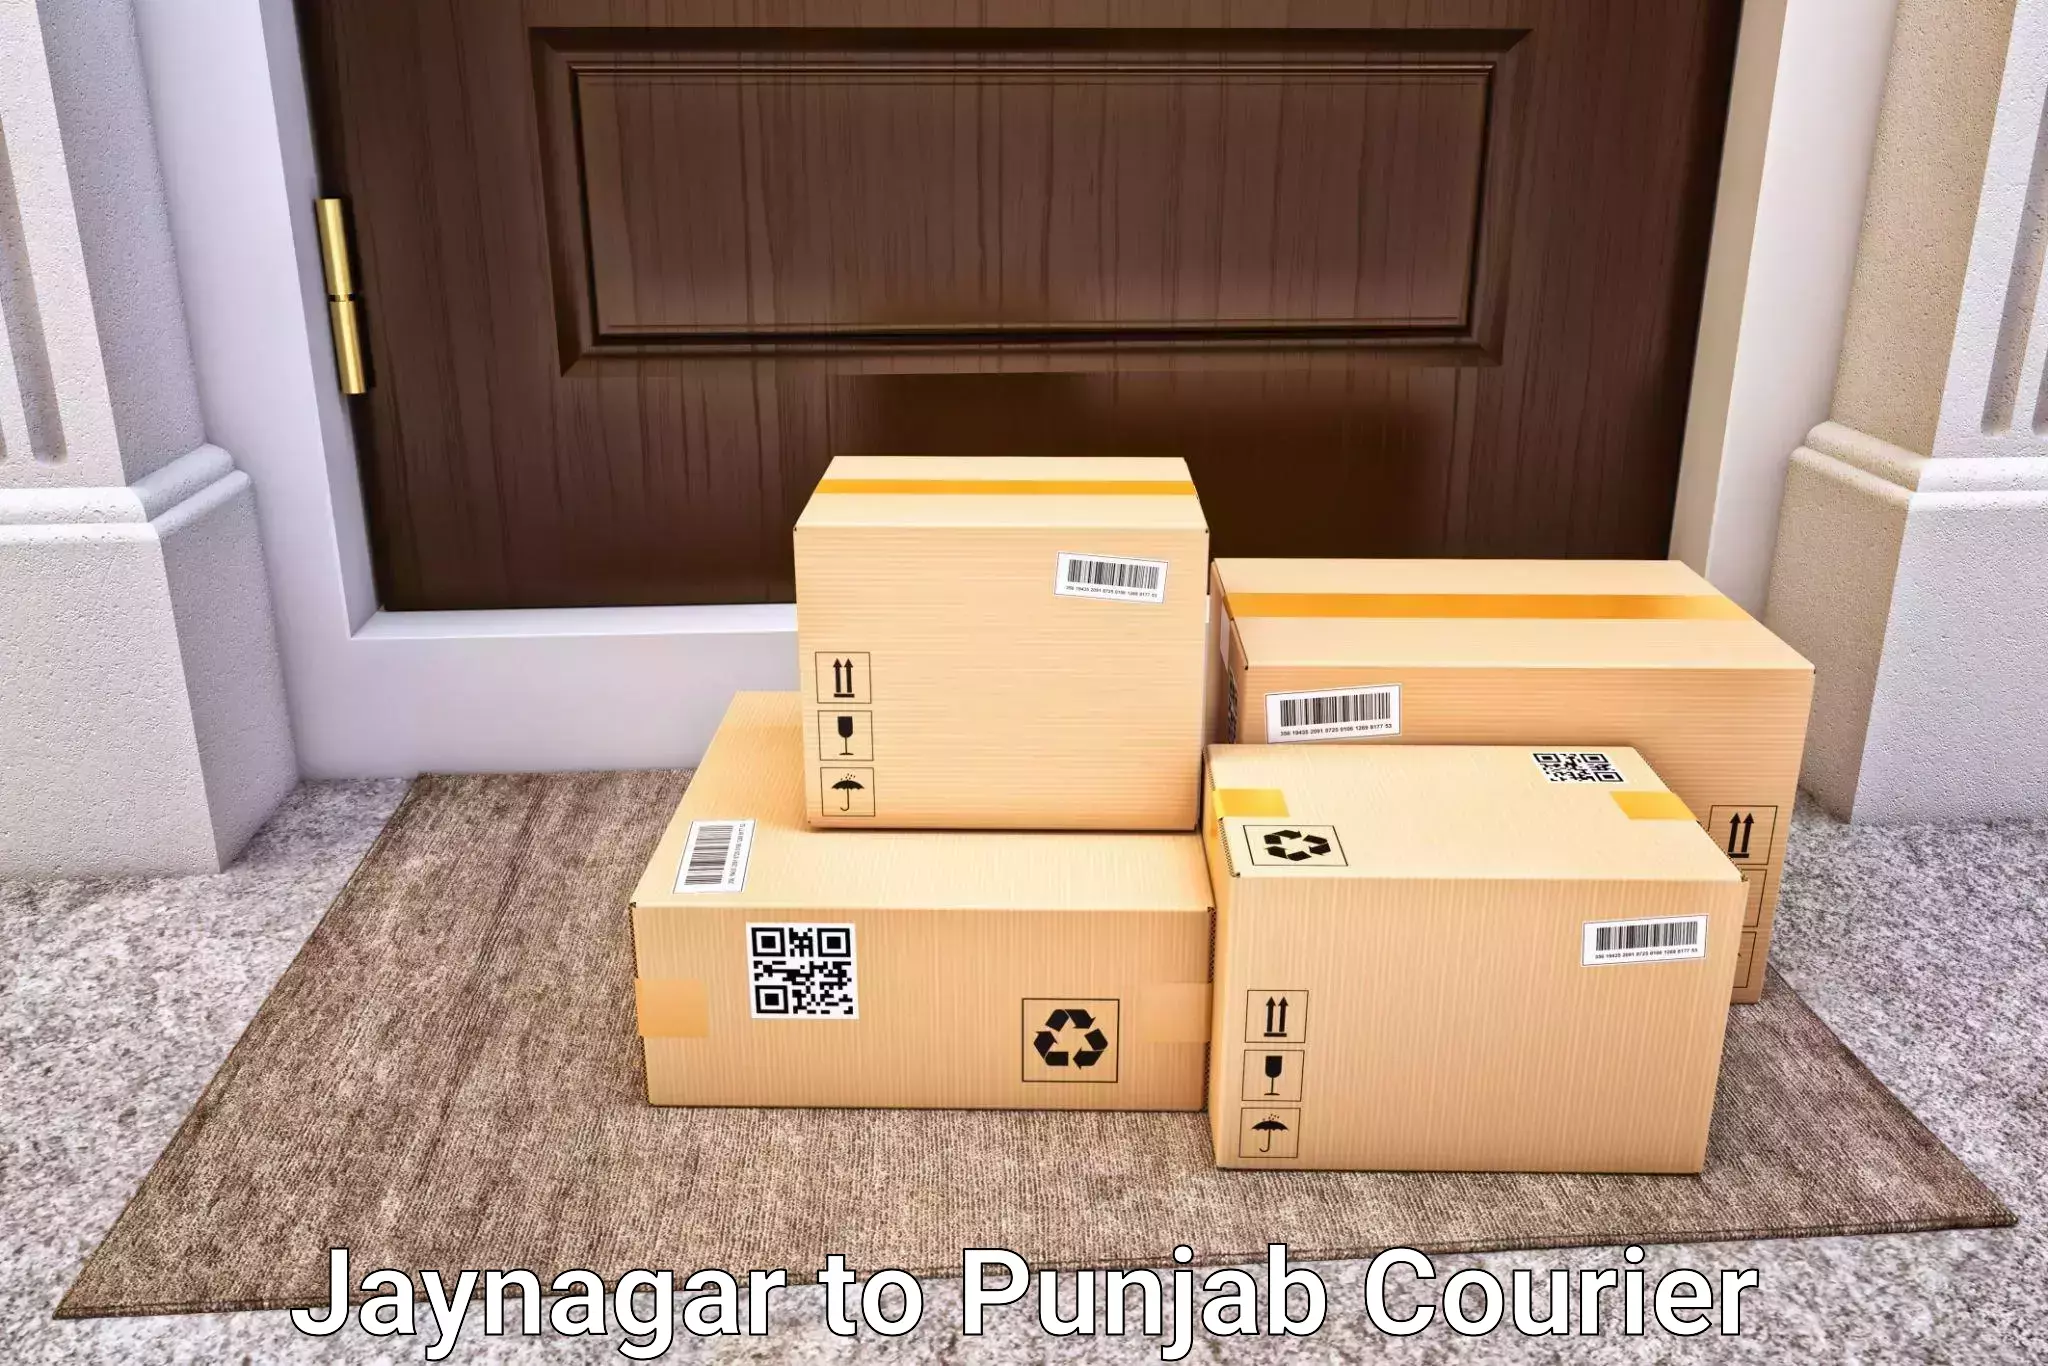 Premium luggage courier Jaynagar to Jalandhar